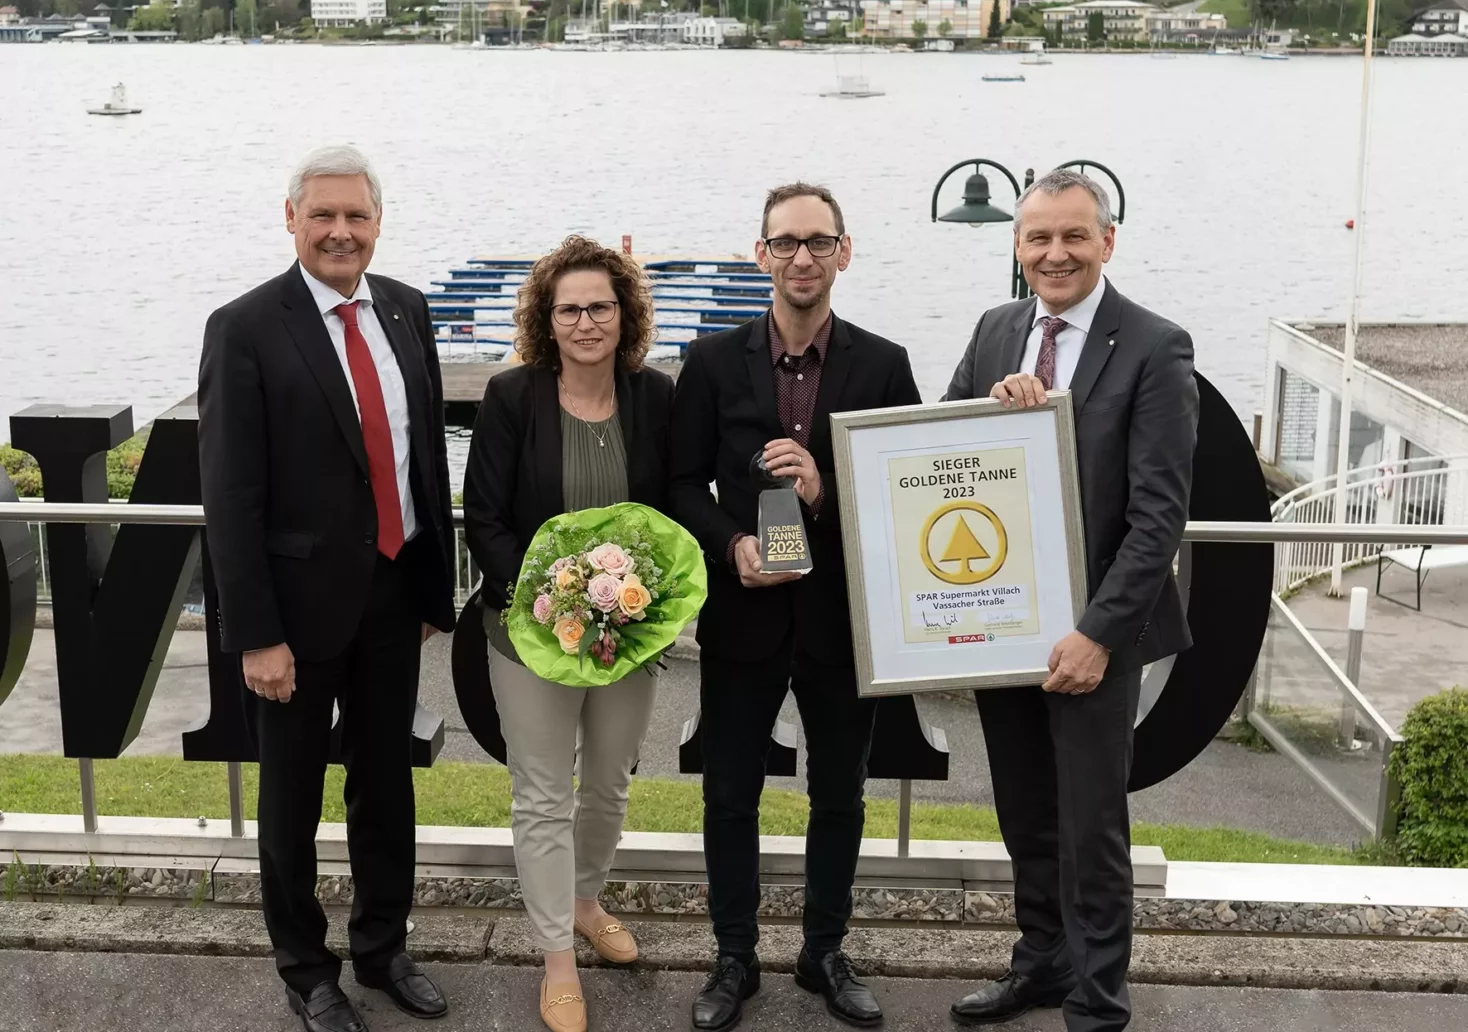 Ein Bild auf 5min.at zeigt Hans K. Reisch, Birgit Dörfler, Thomas Scheiber und Paul Bacher mit der Auszeichnung und einem Blumenstrauß in den Händen.